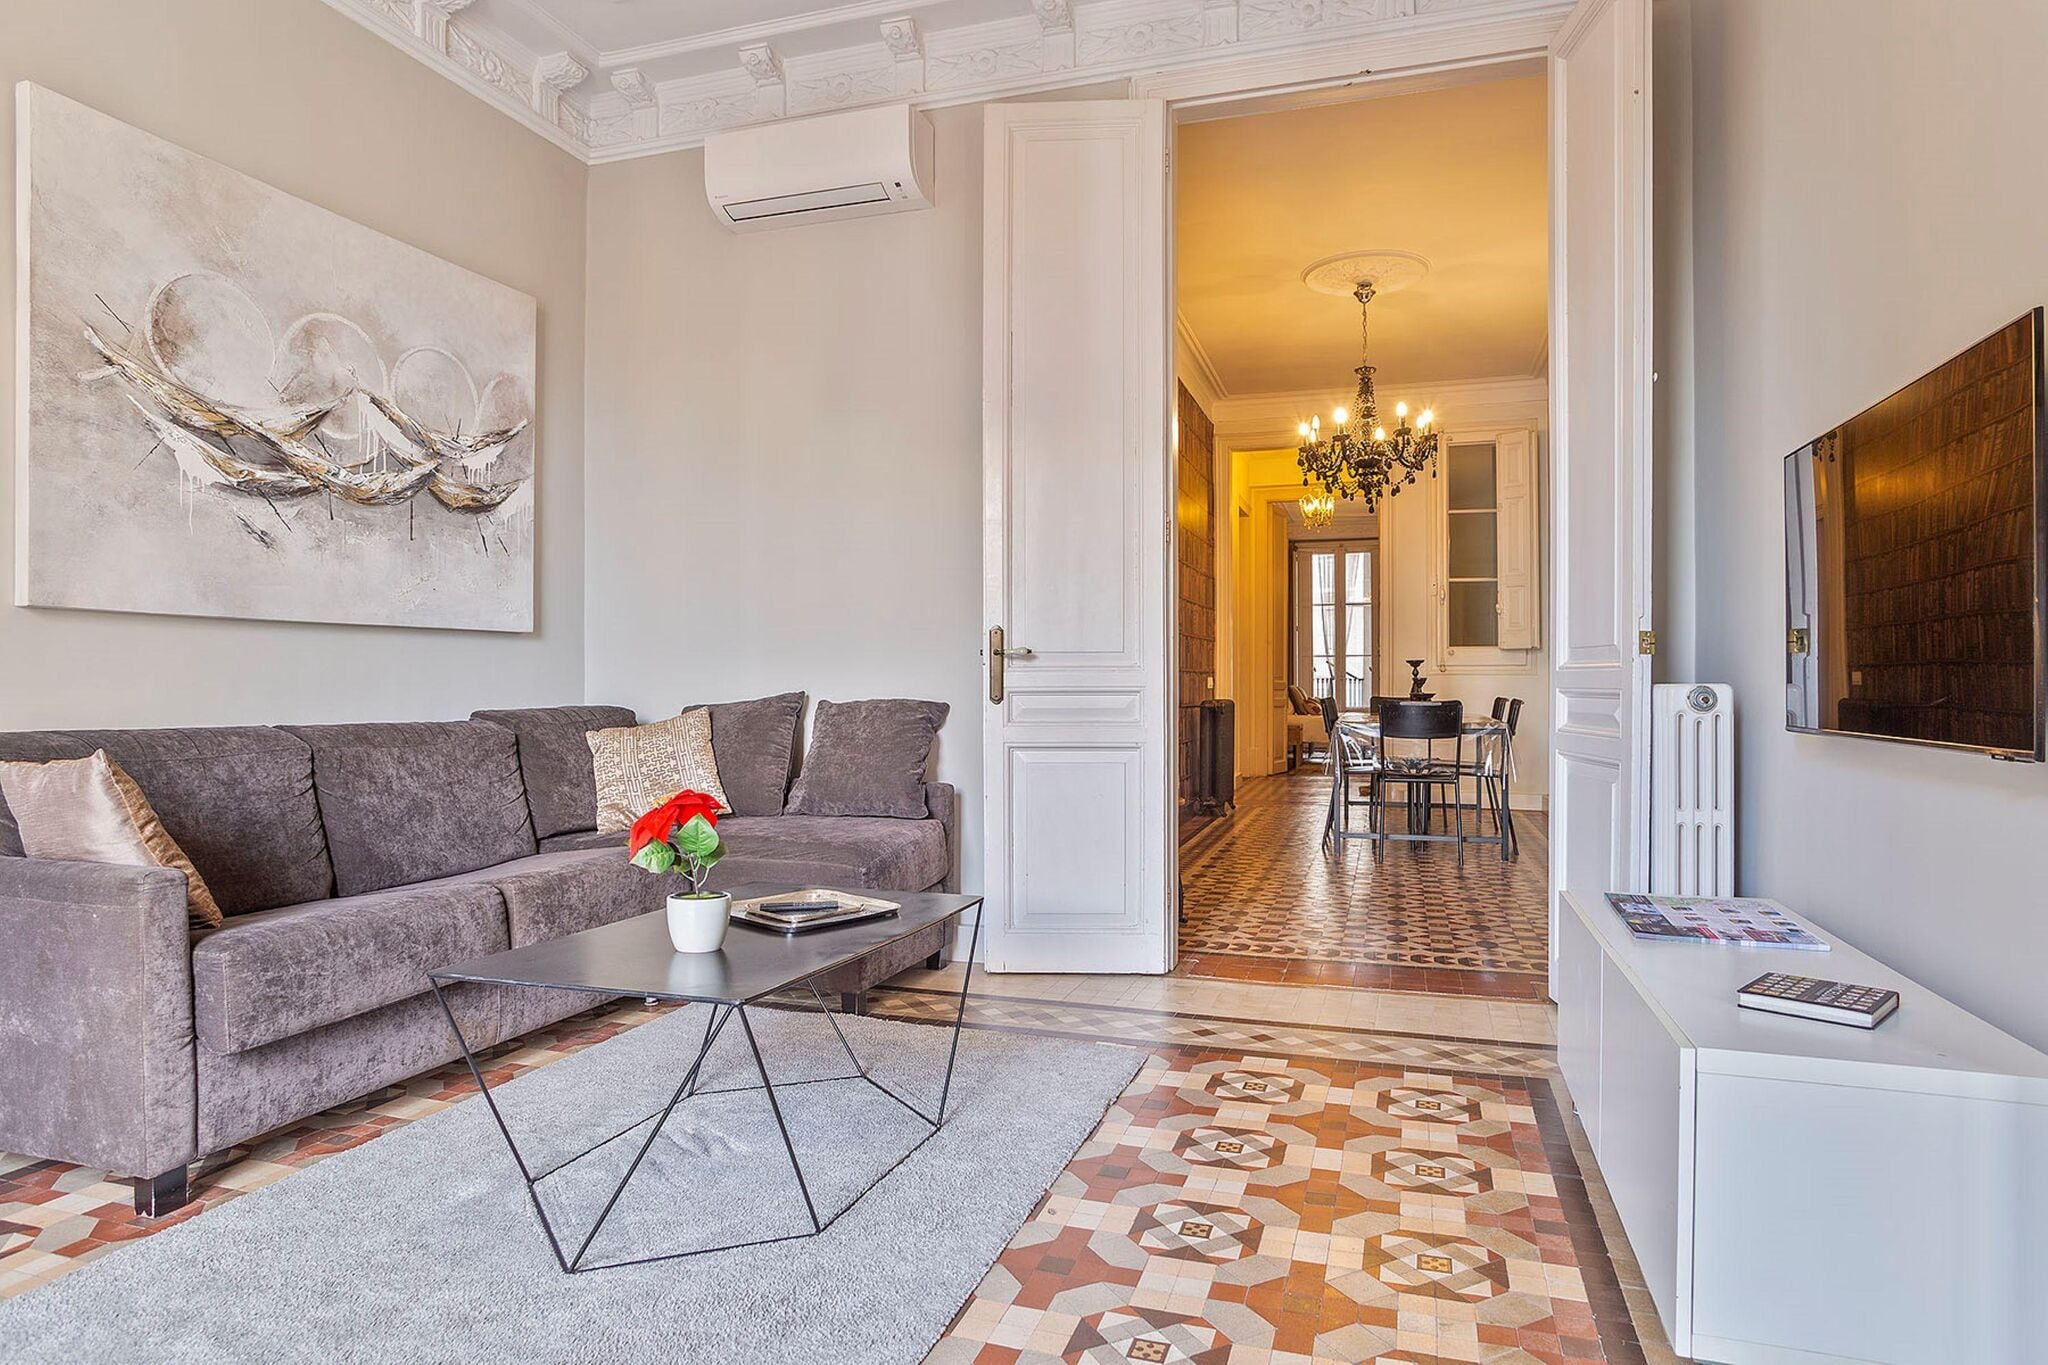 Appartement luxueux pour 5 personnes récemment rénové dans le centre de Barcelone